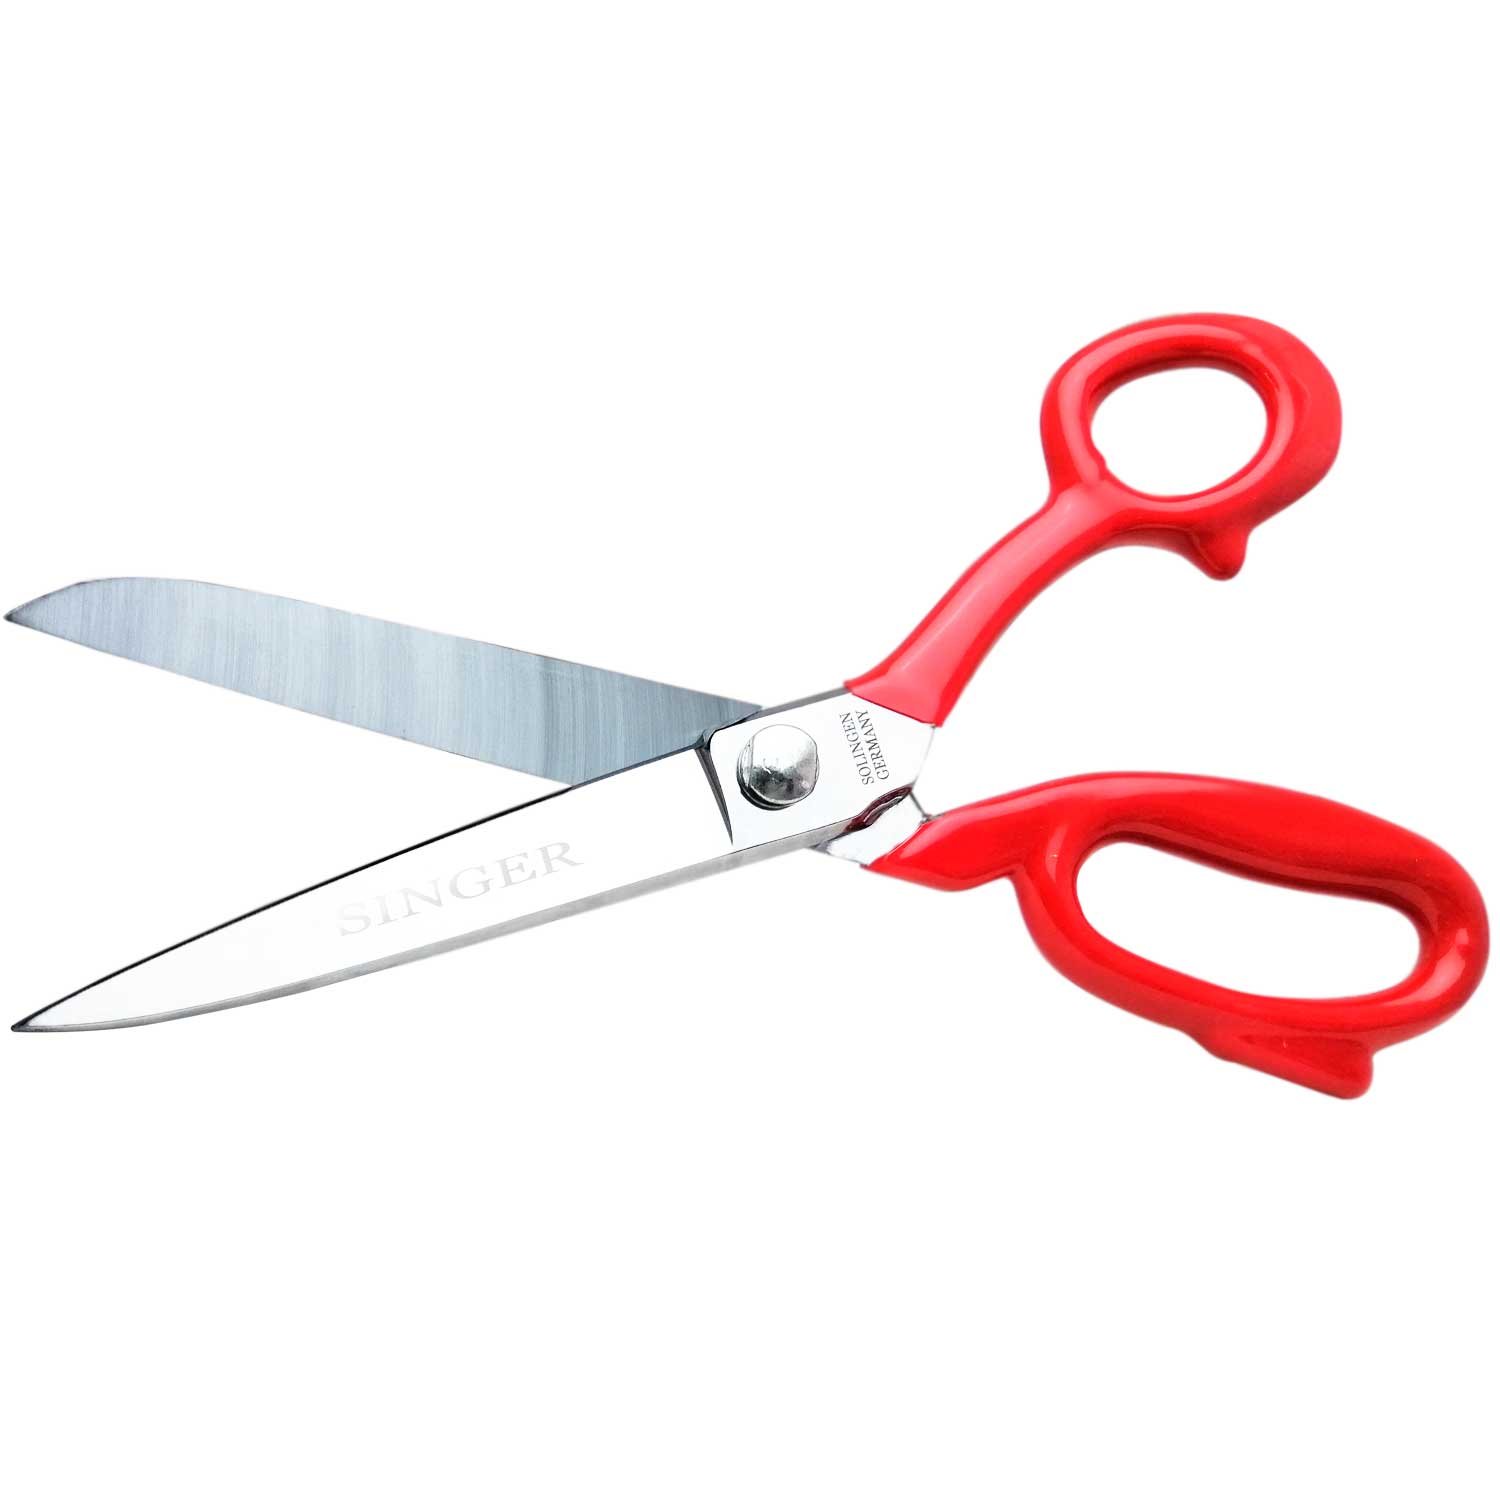 singer tailoring scissors